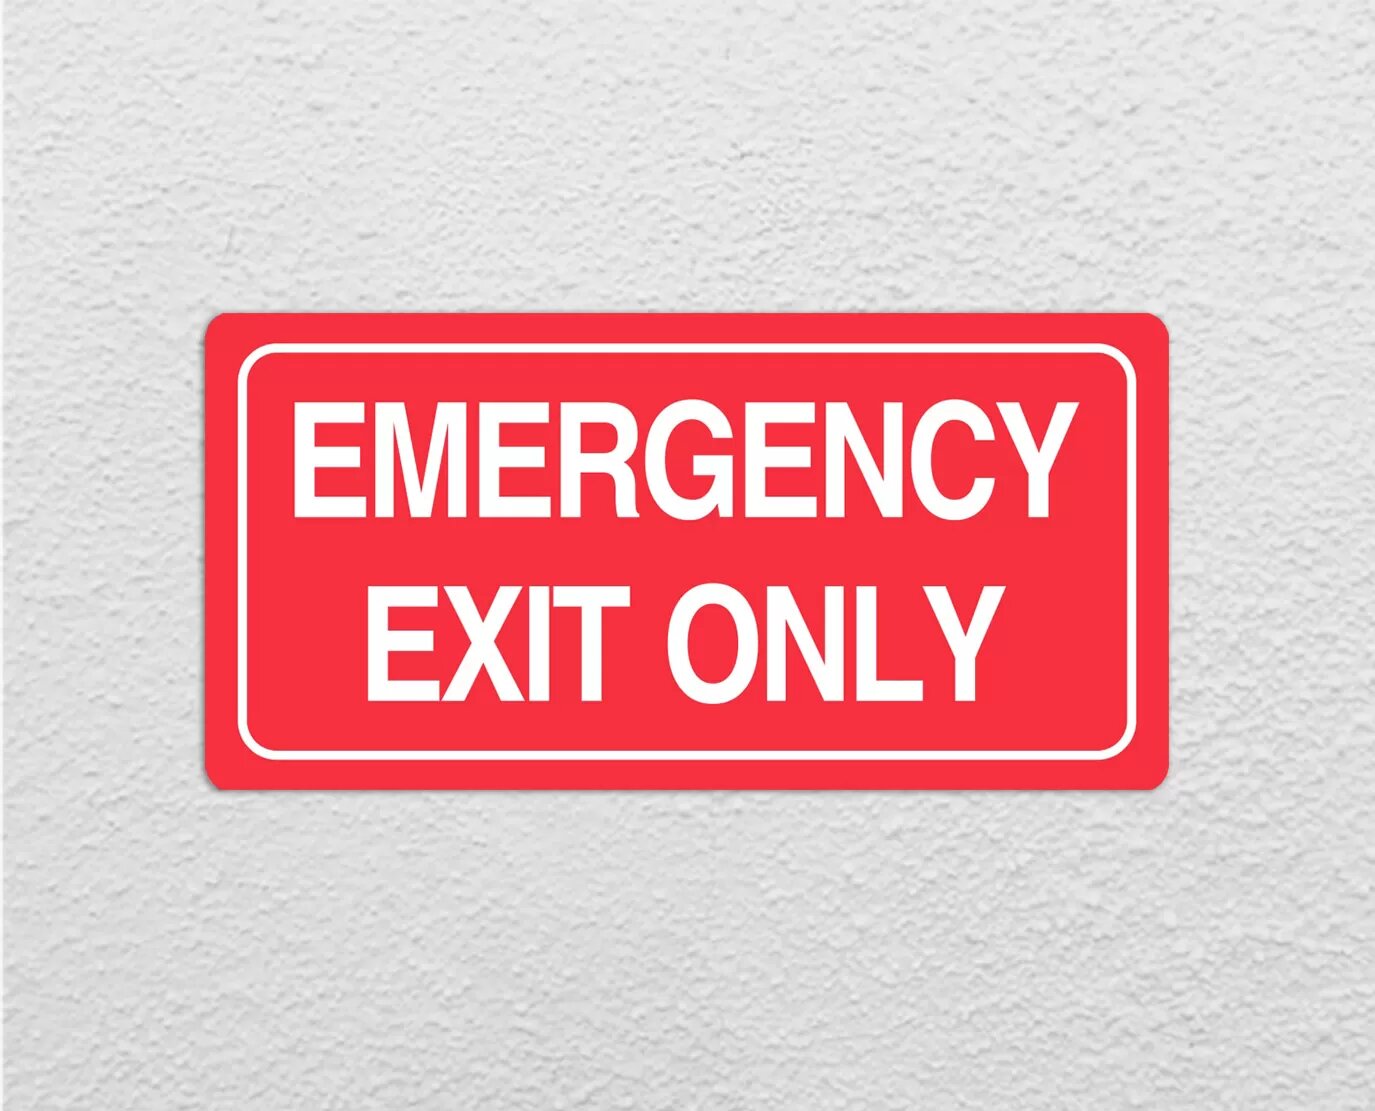 alt="building emergency exit fire safety sign maker"